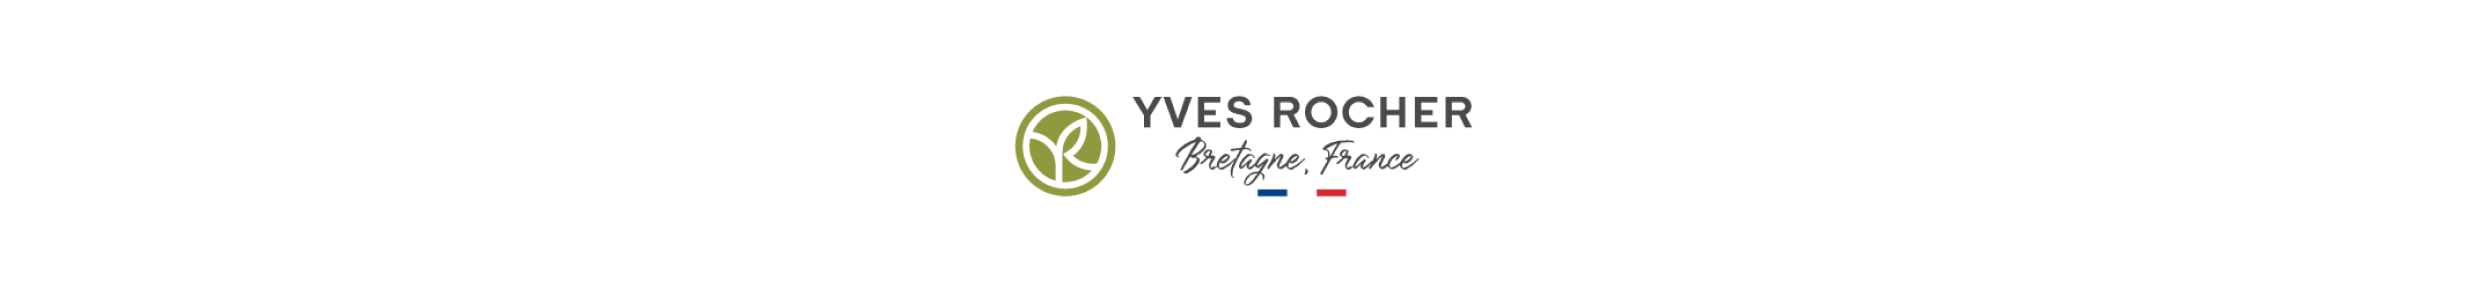 YVES ROCHER logo